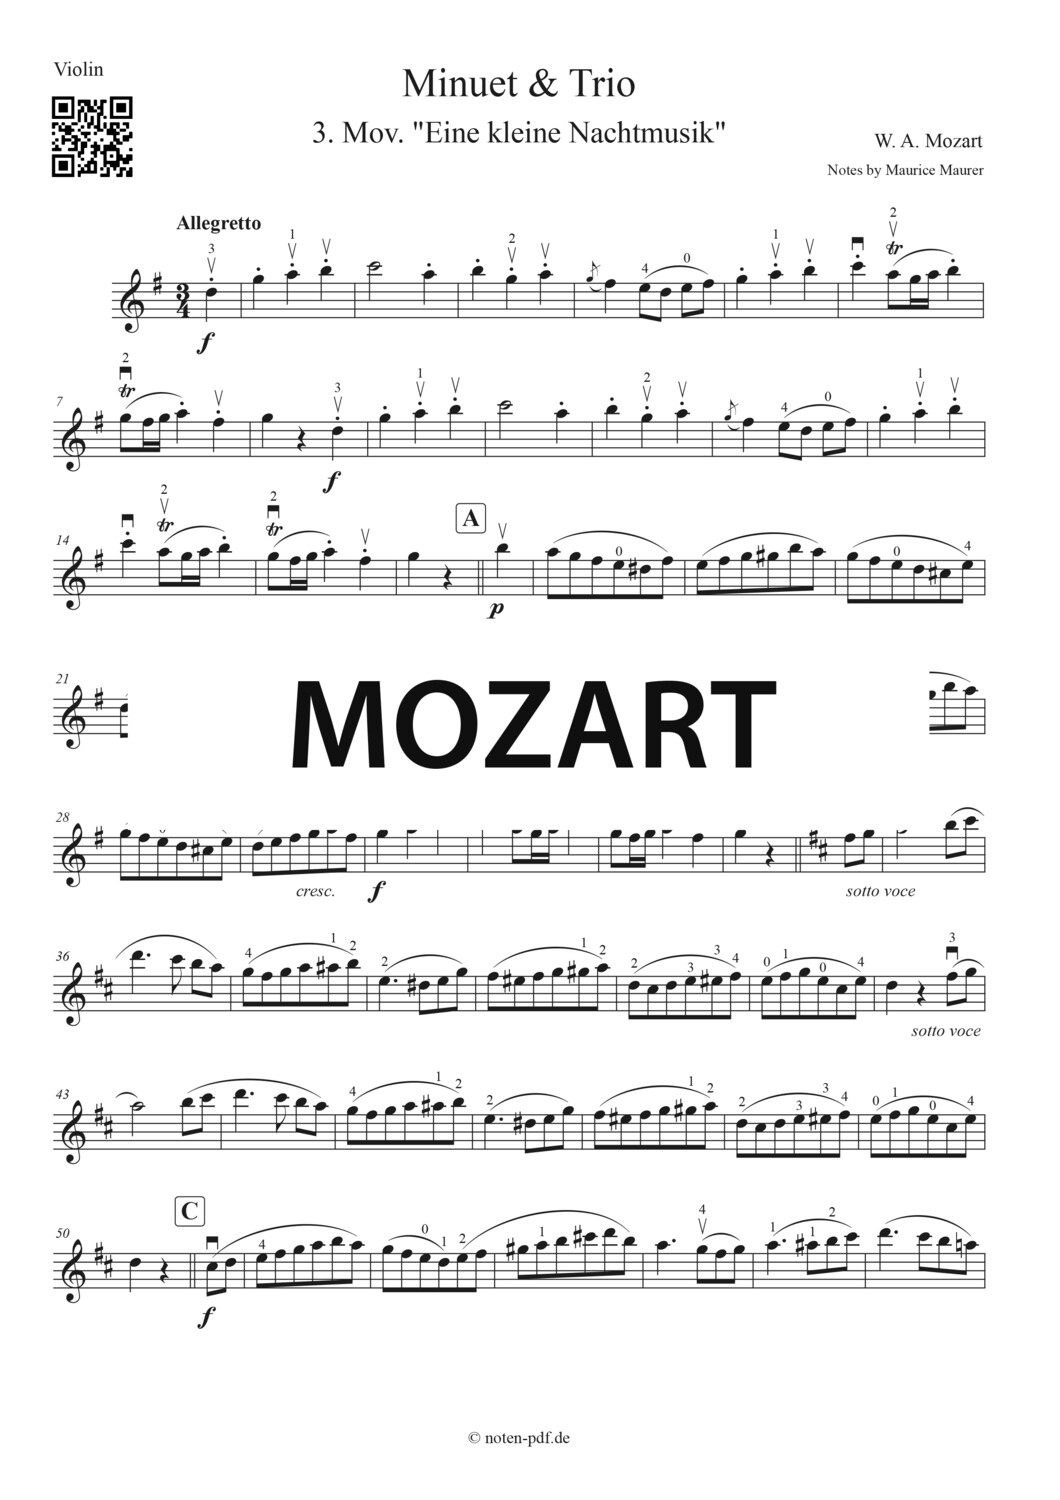 Mozart: Minuet & Trio from "Eine kleine Nachtmusik"